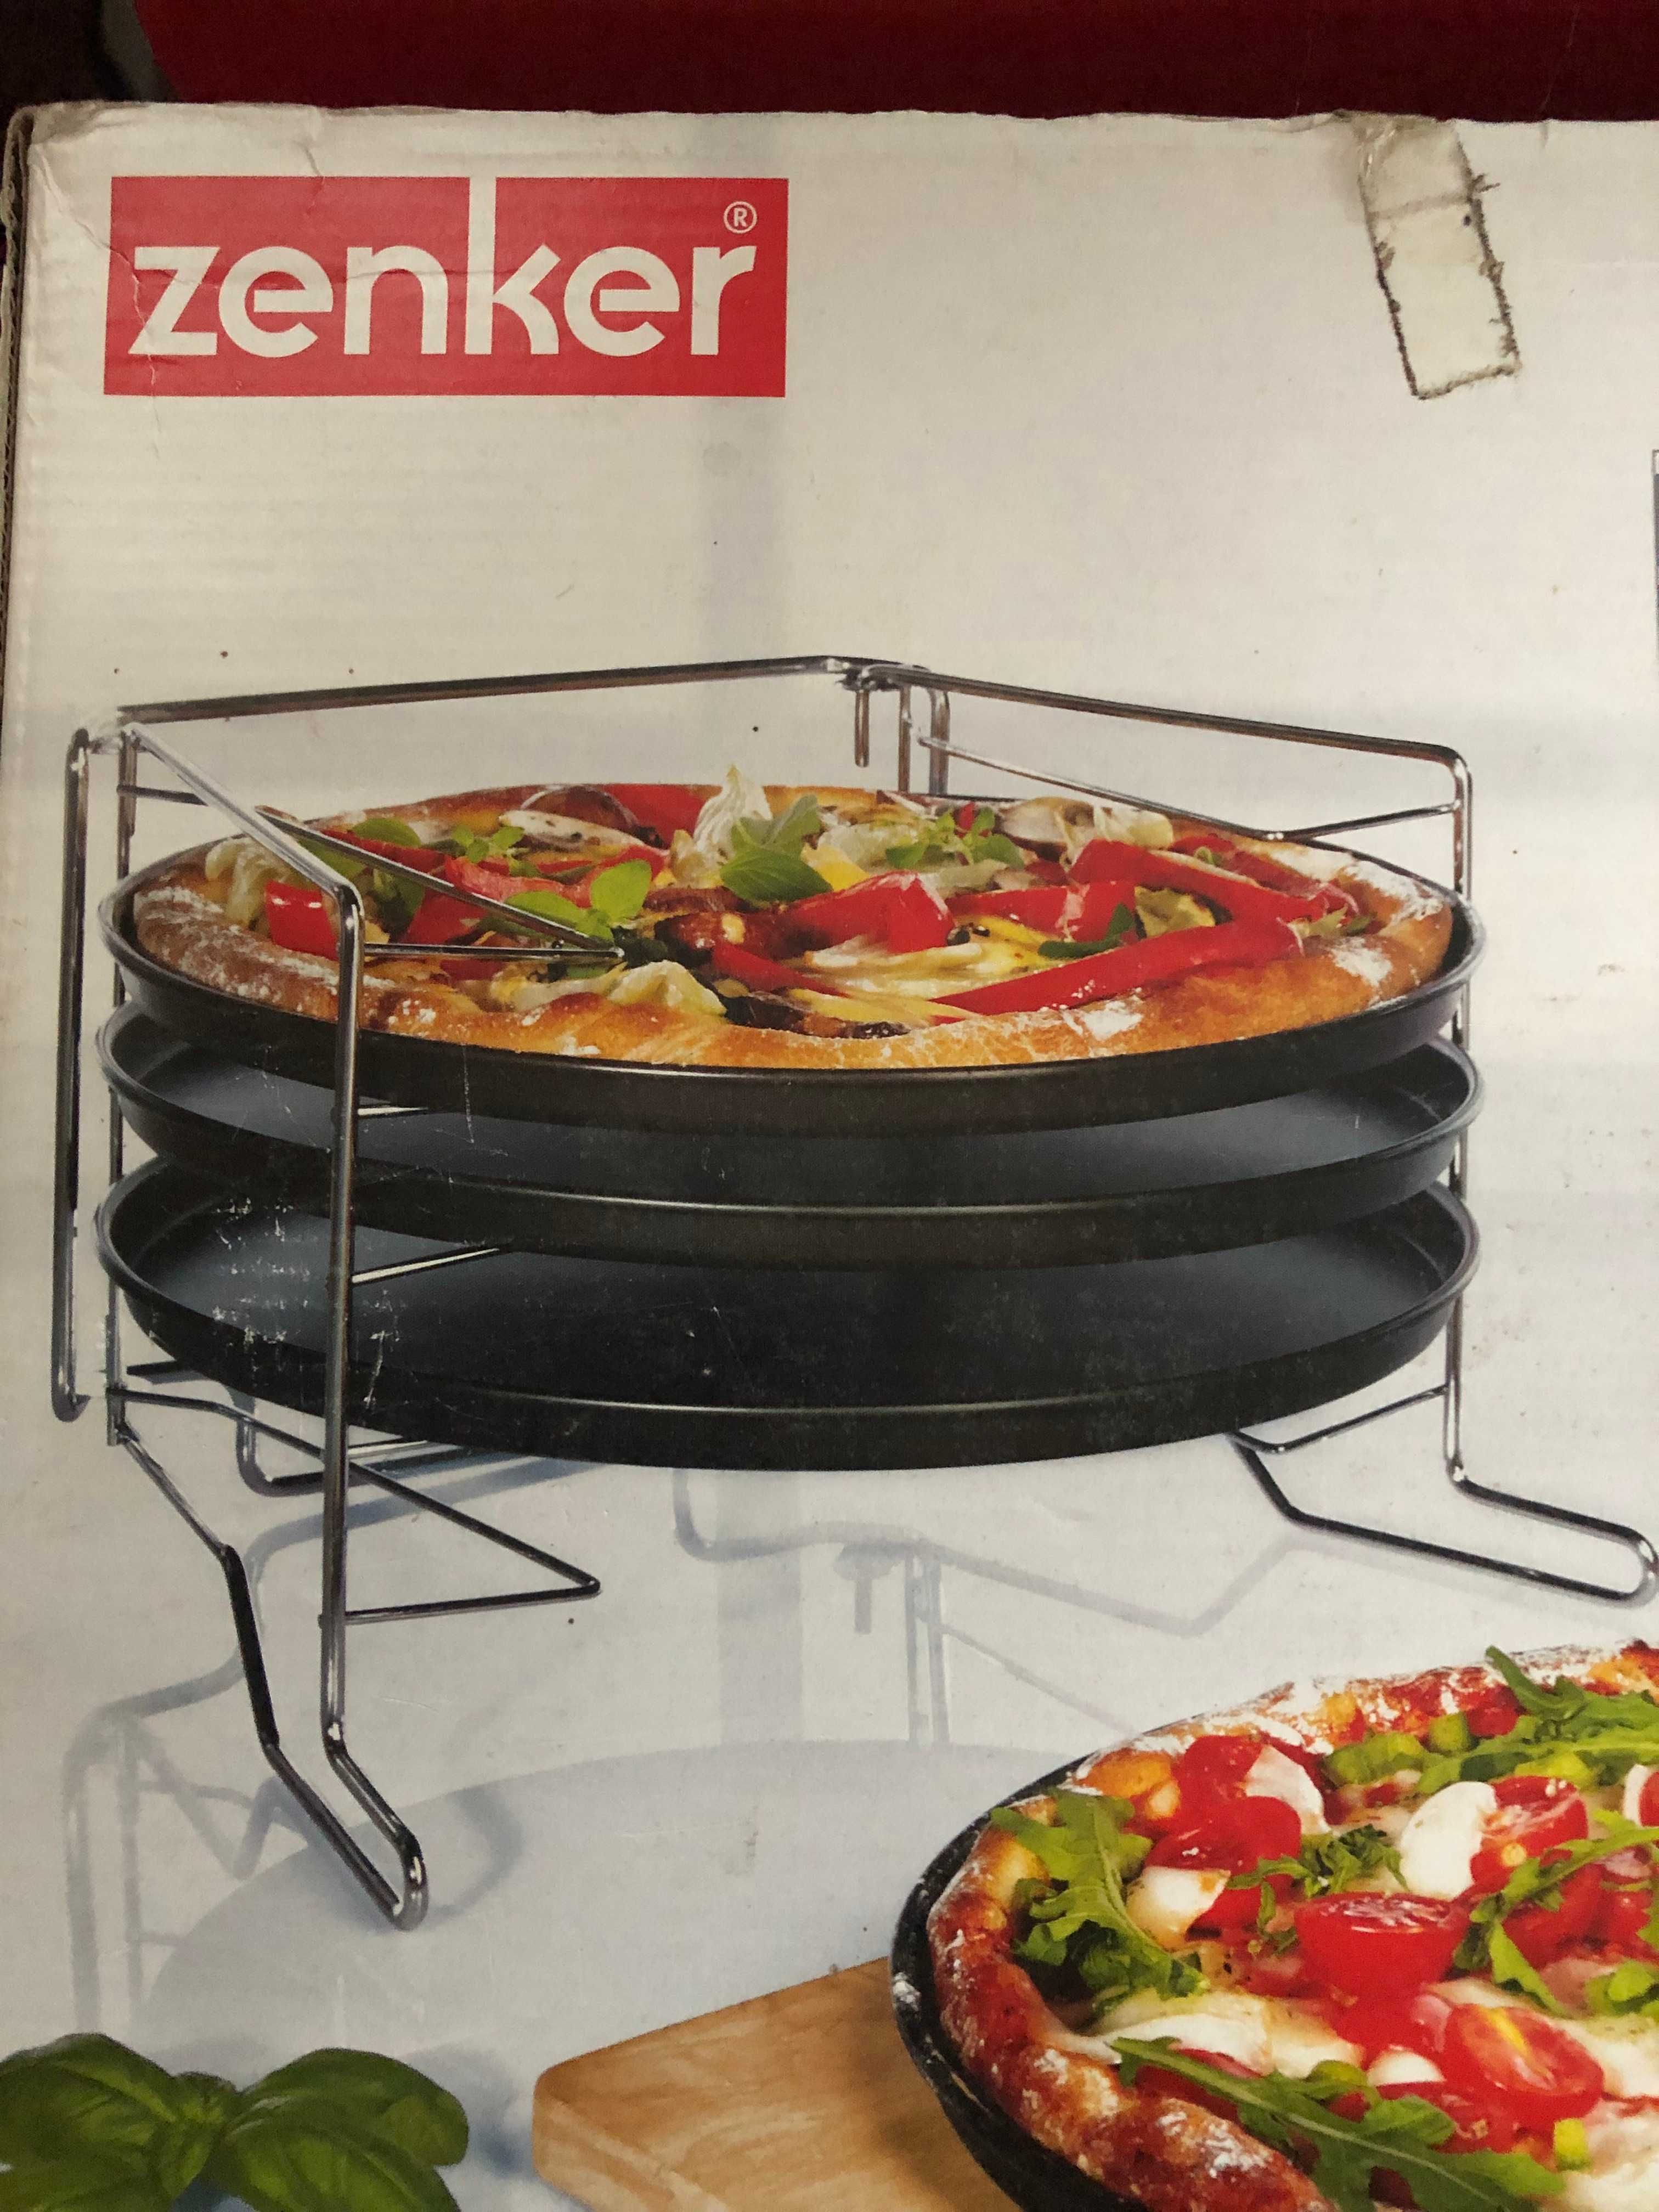 Zestaw Zenker do pieczenia pizzy w piekarniku (Made in Germany)